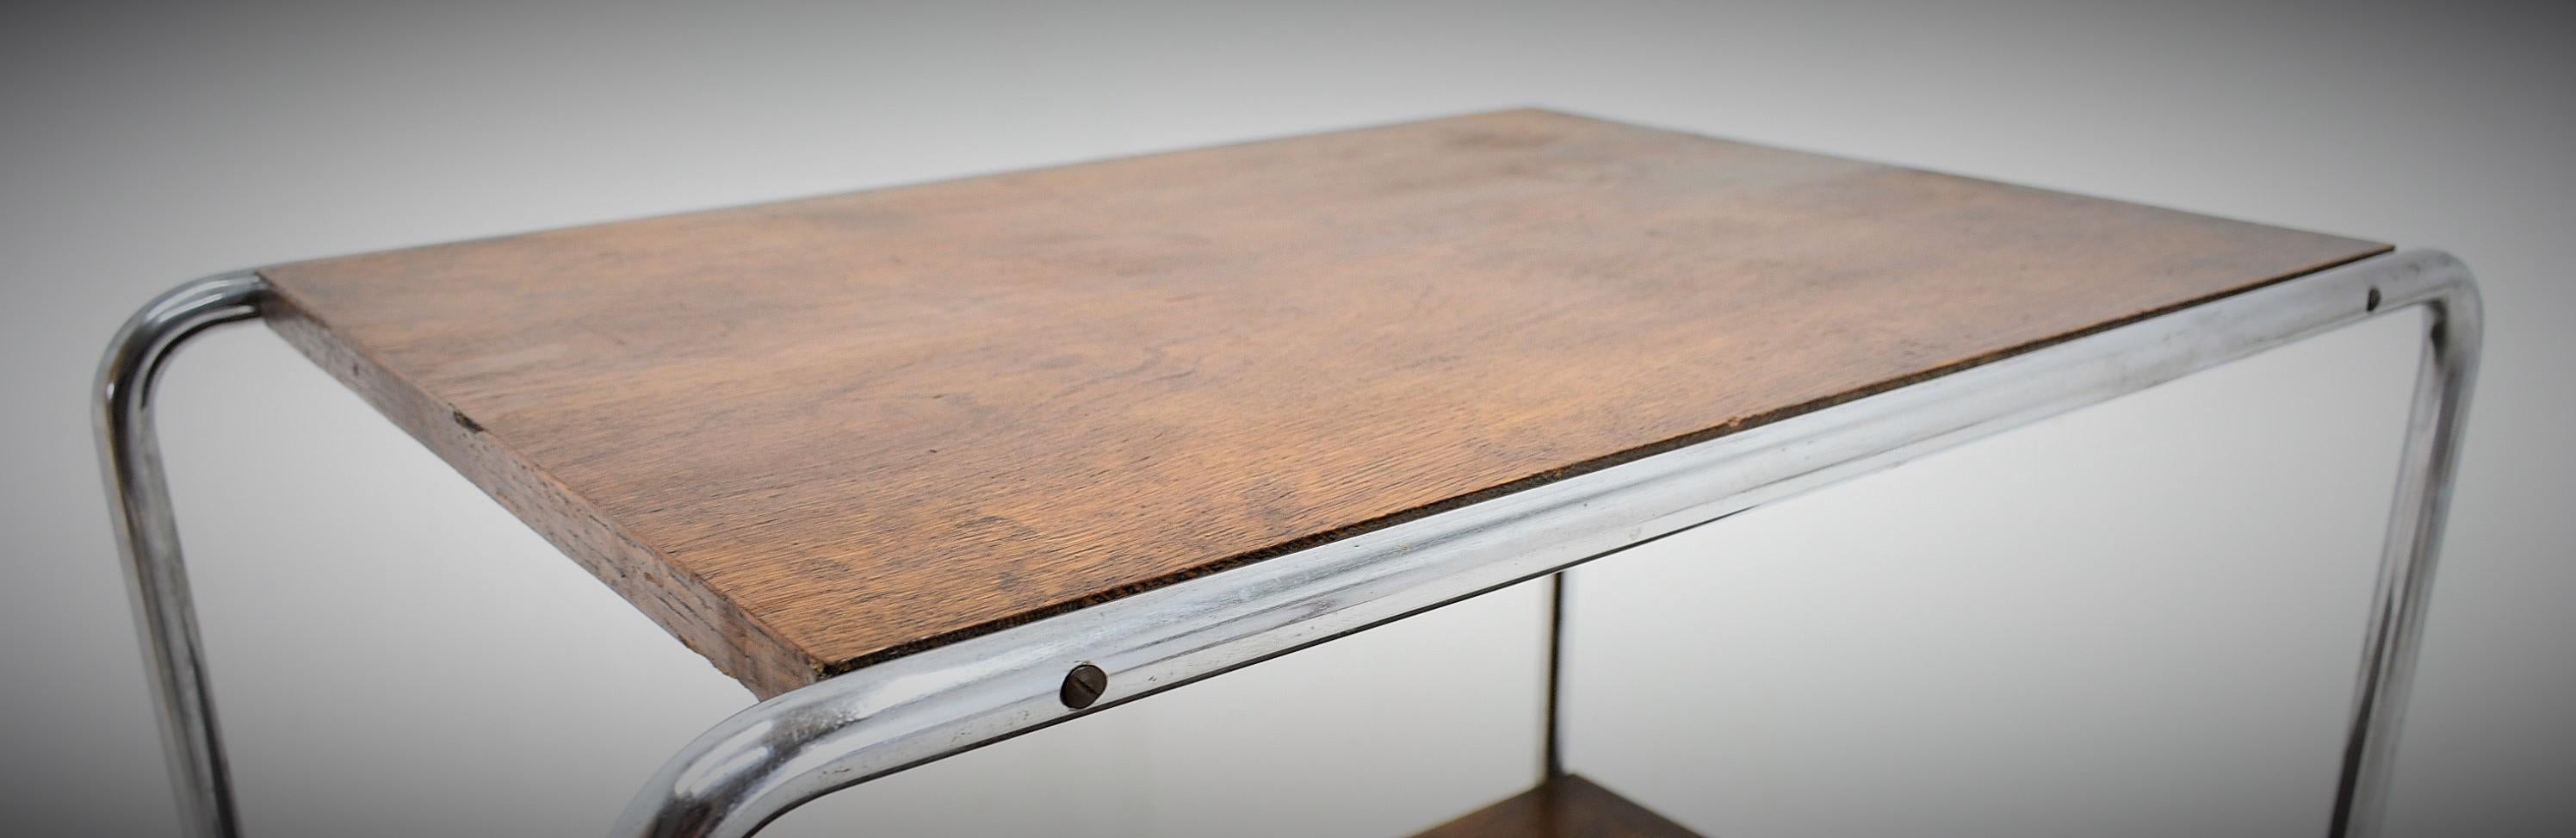 Bauhaus Chrome Table by Marcel Breuer for Mucke Melder, 1930s For Sale 13